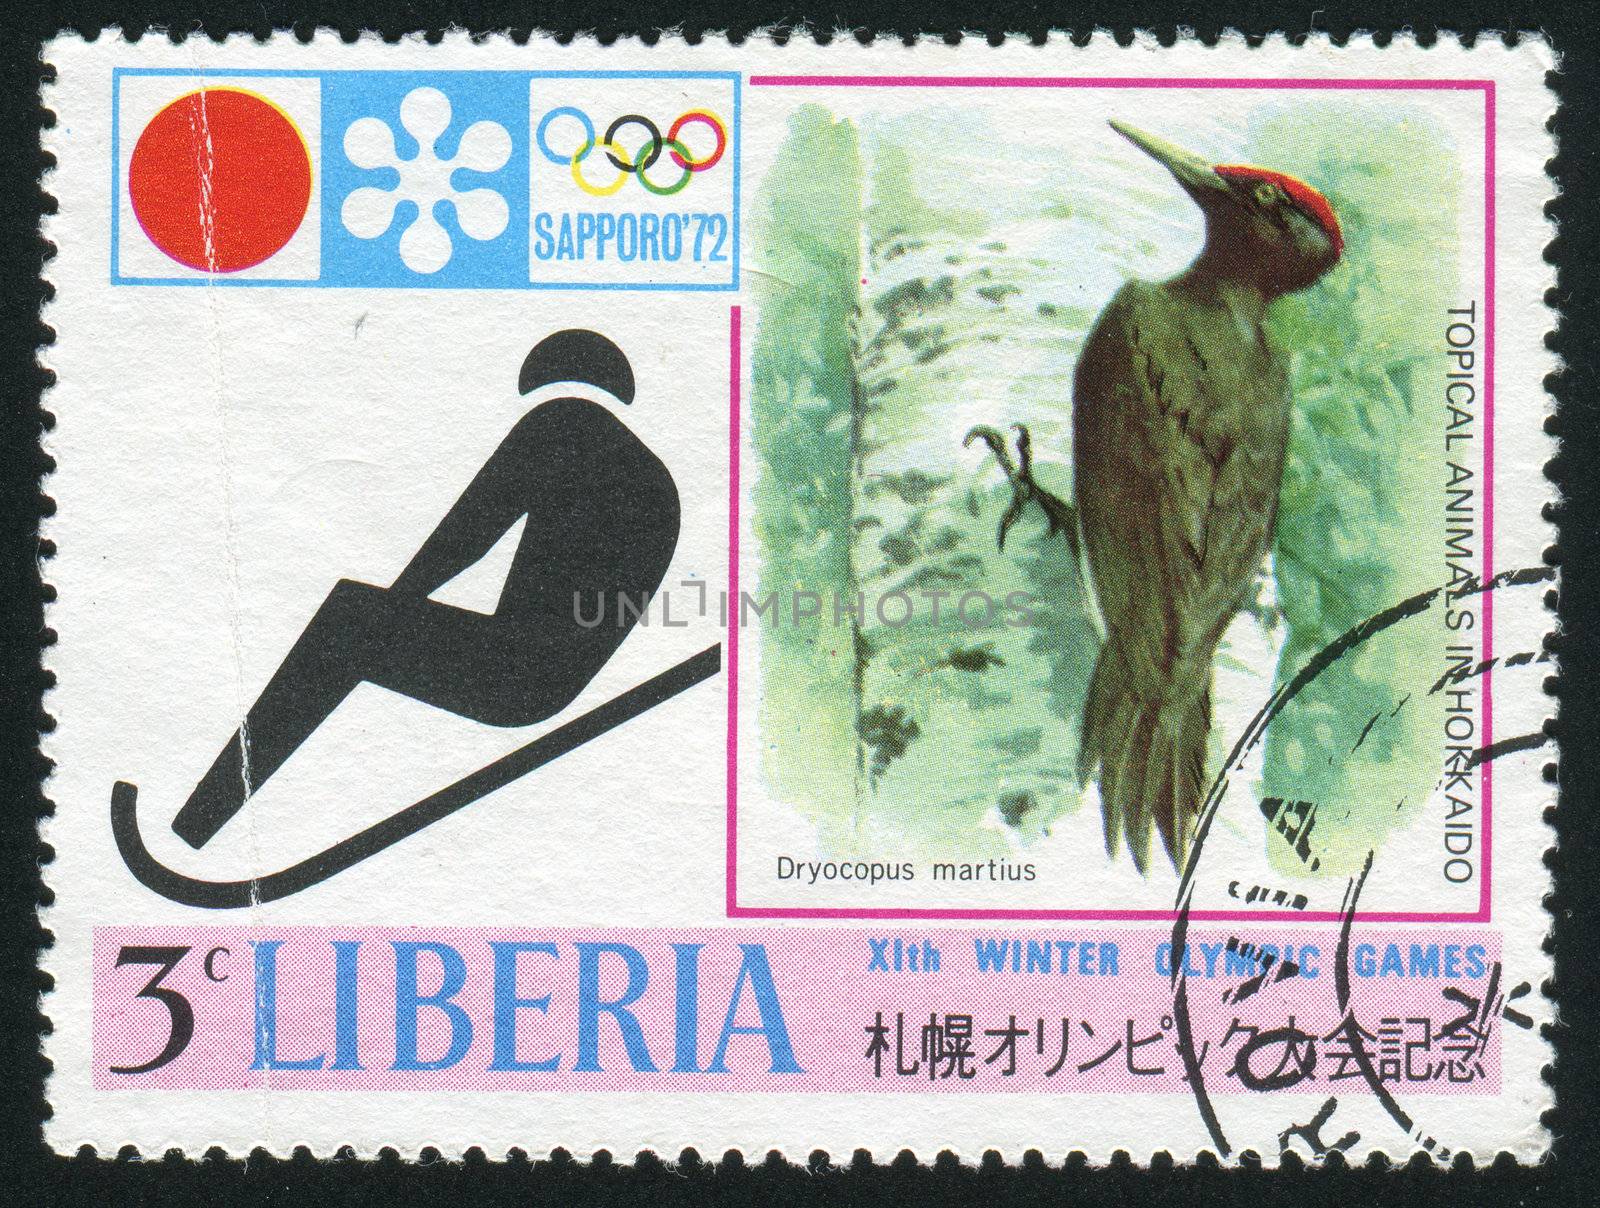 LIBERIA - CIRCA 1971: Sapporo 72 Emblem: Sledding and black woodpecker, circa 1971.